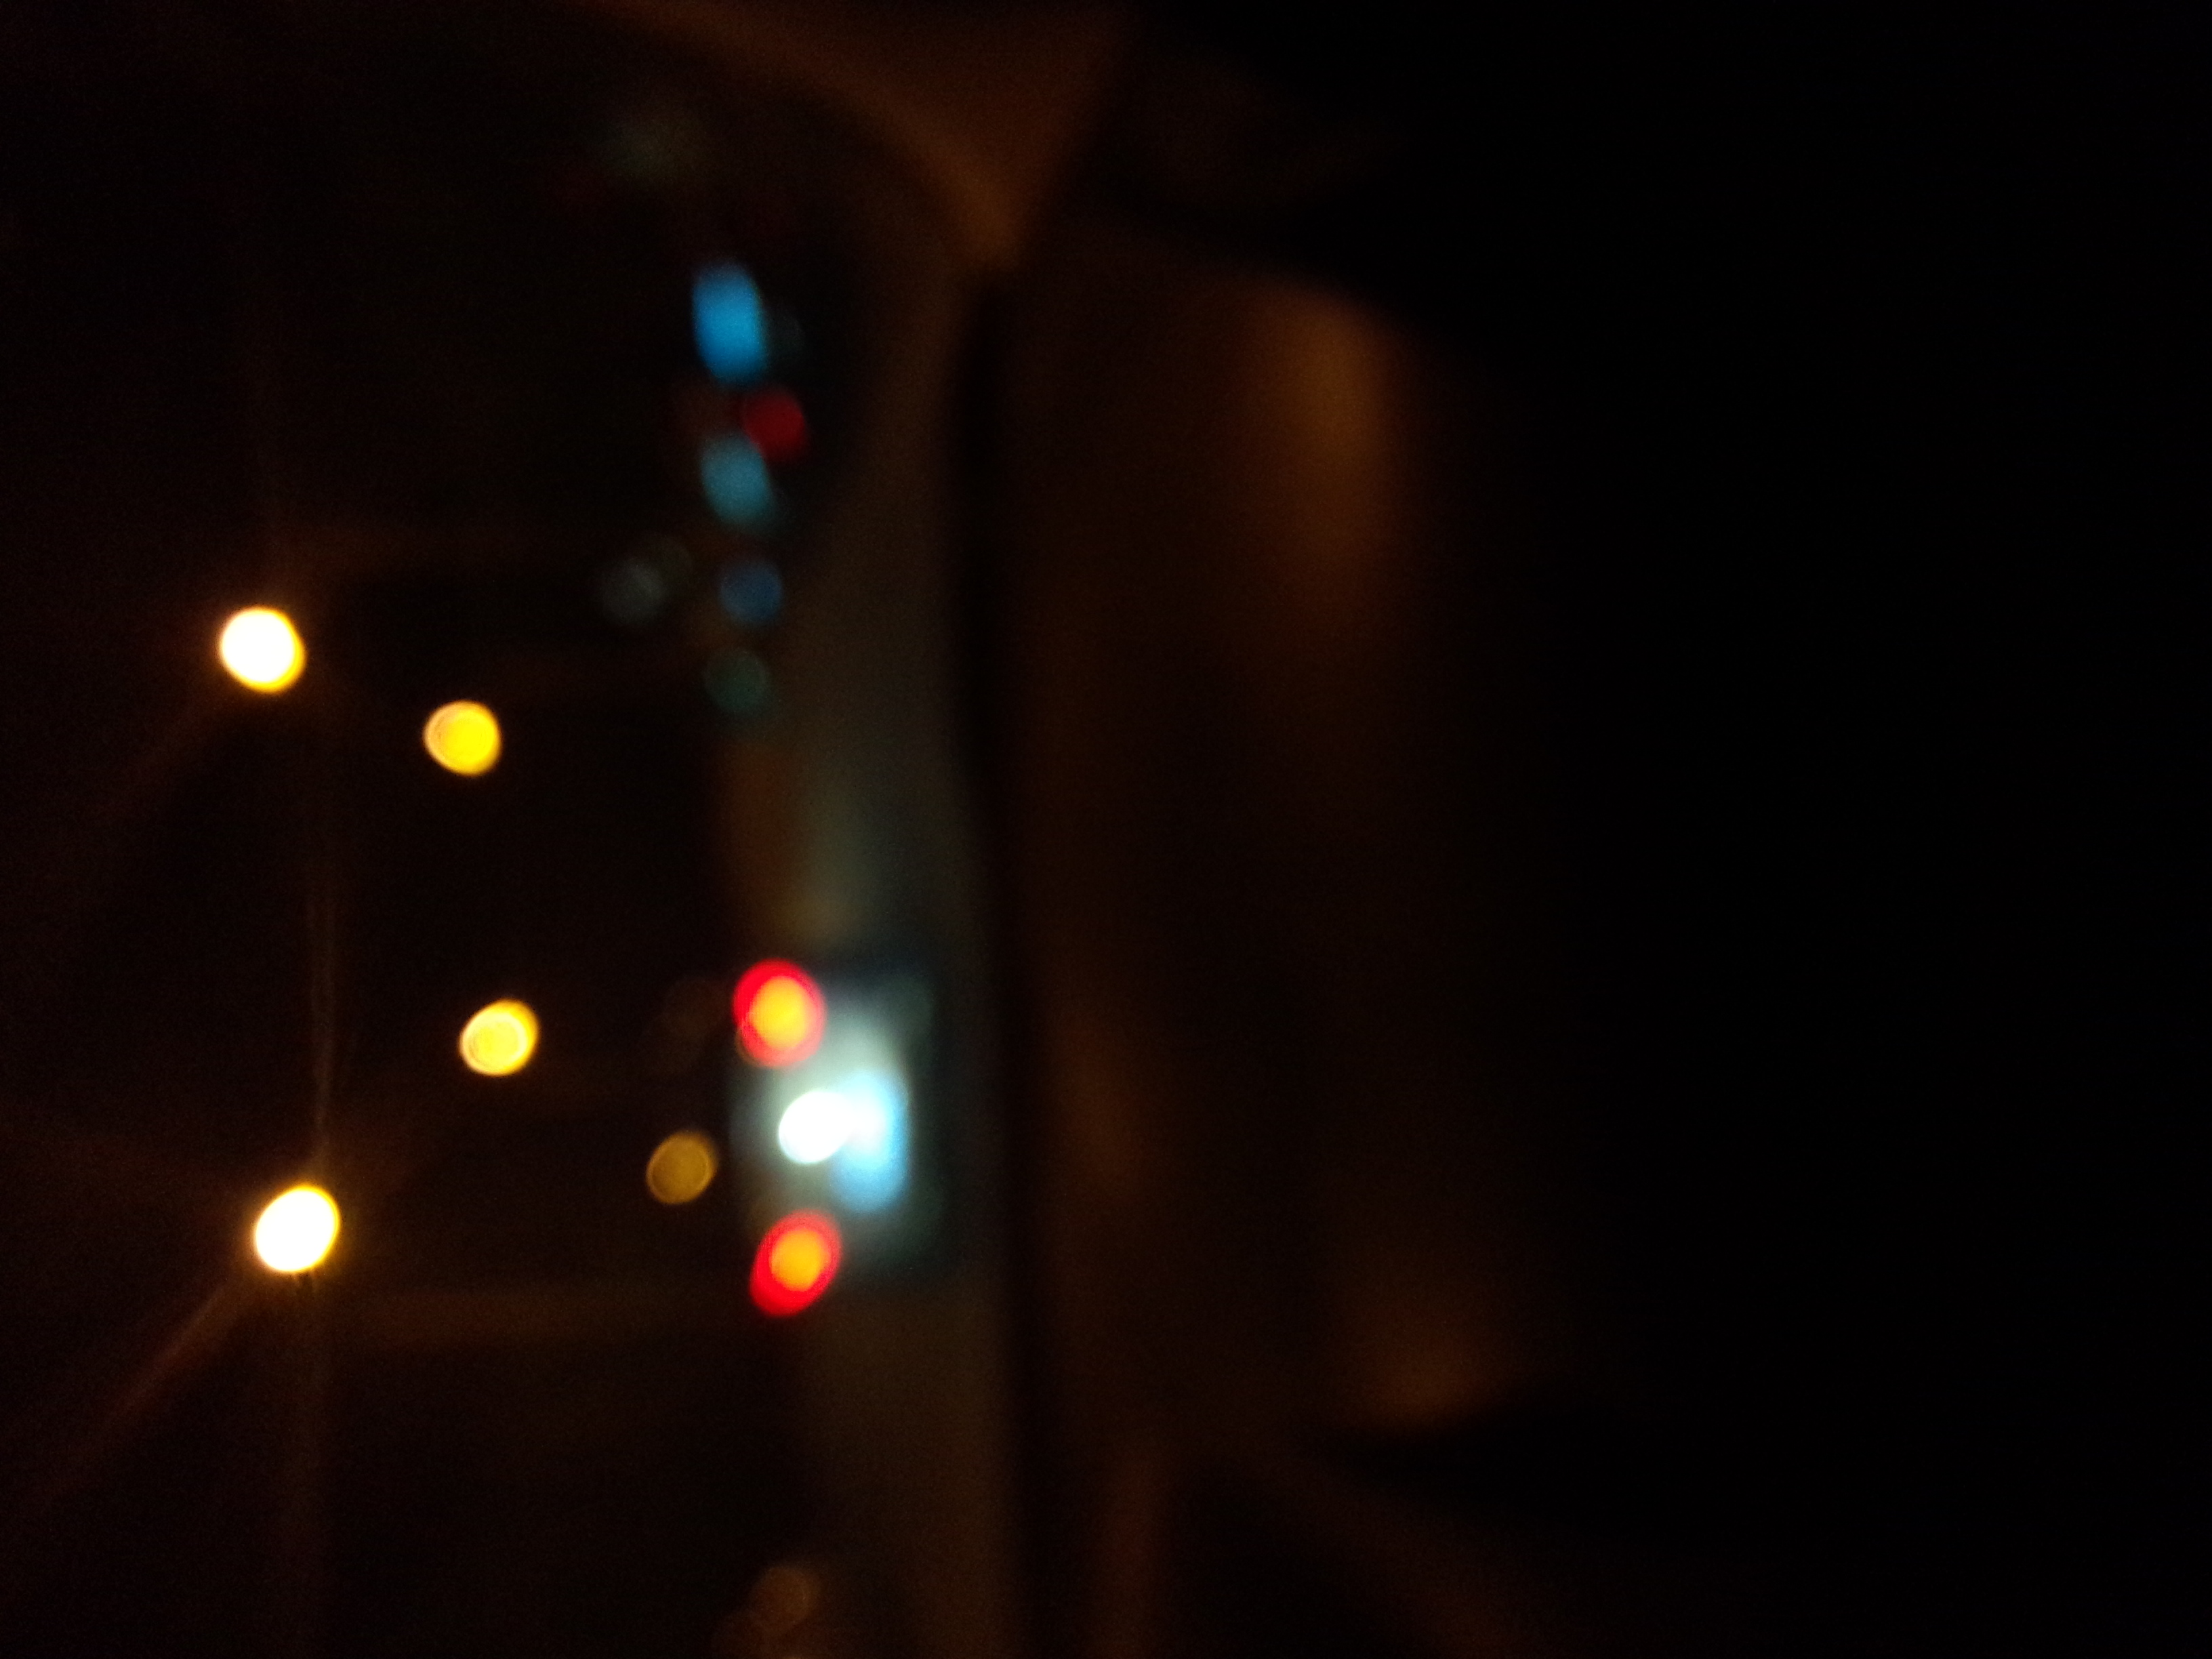 远处照来的灯光 模糊了车窗外 熟悉的身影.(mx夜晚随拍)